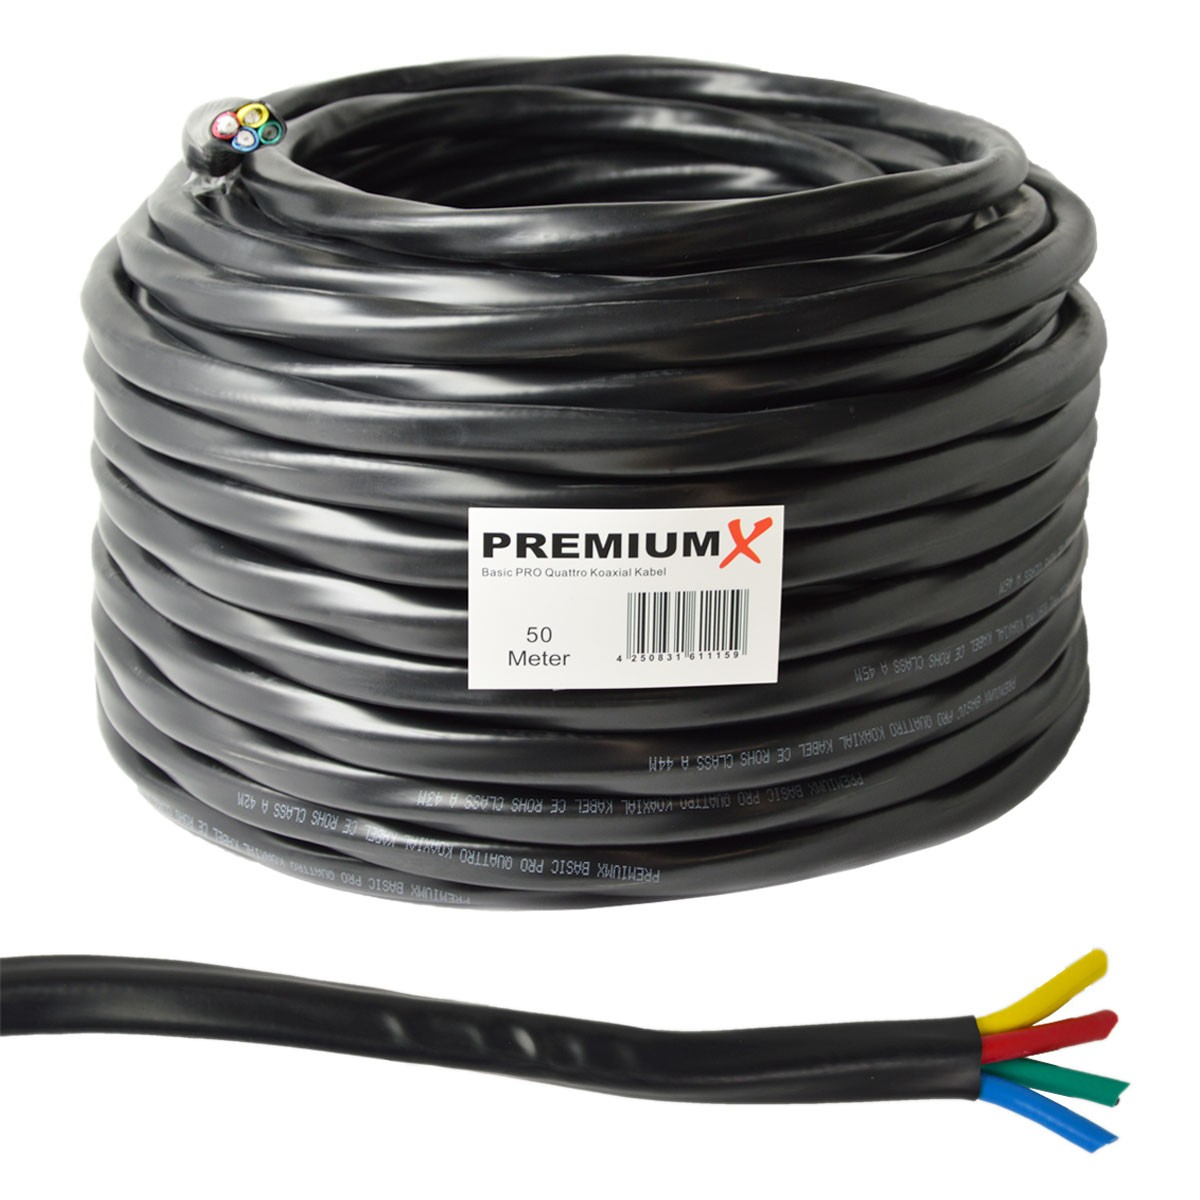 PREMIUMX 50m Basic PRO Quattro Antennenkabel 2-Fach 90dB Kabel Schwarz Koaxial SAT